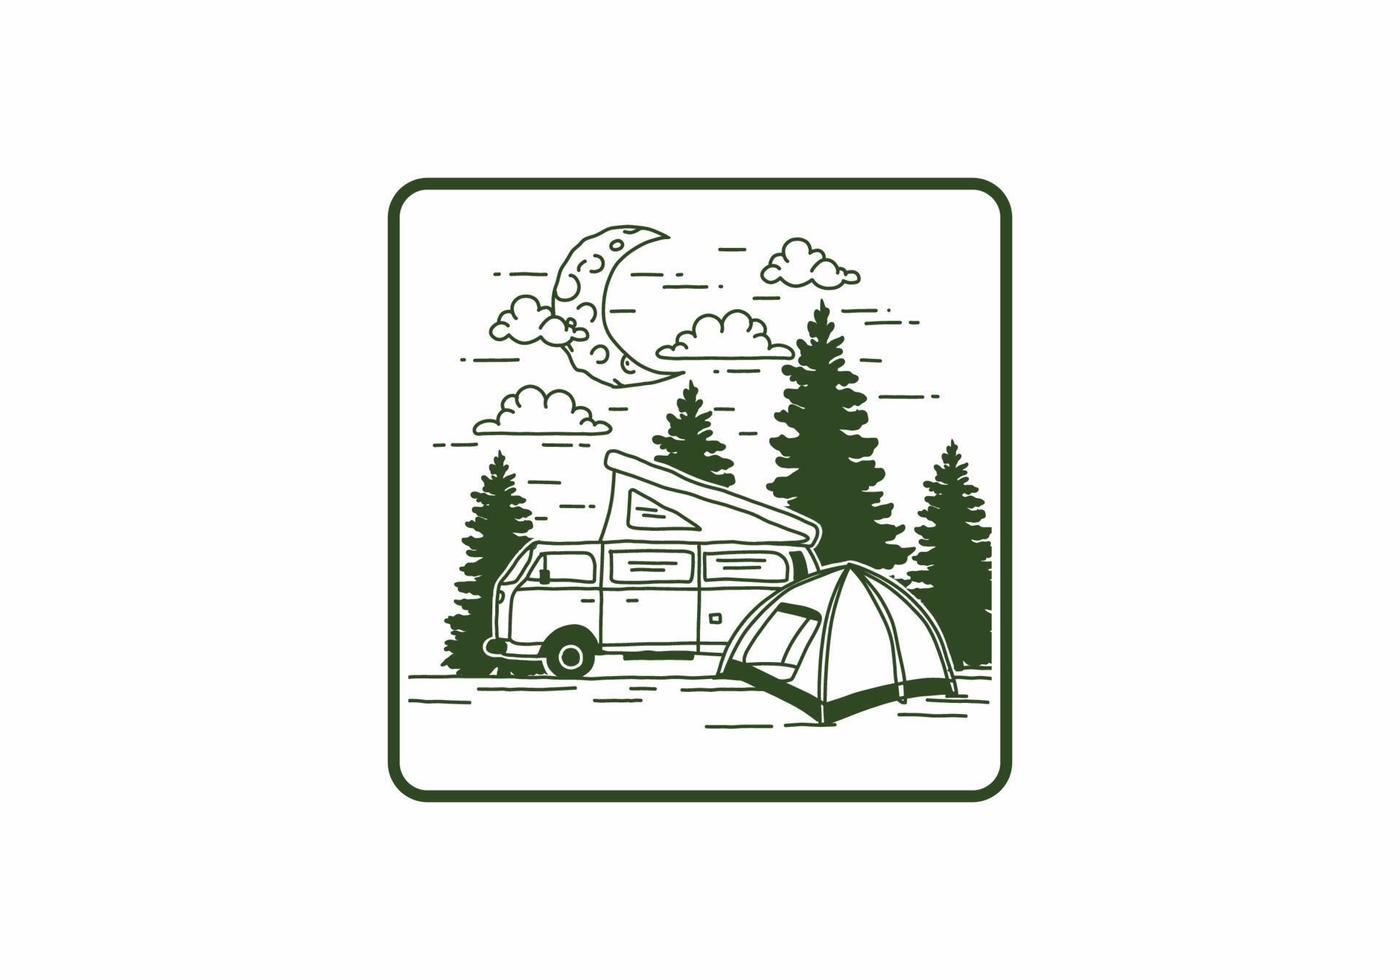 camping de media luna con ilustración de autocaravana vector